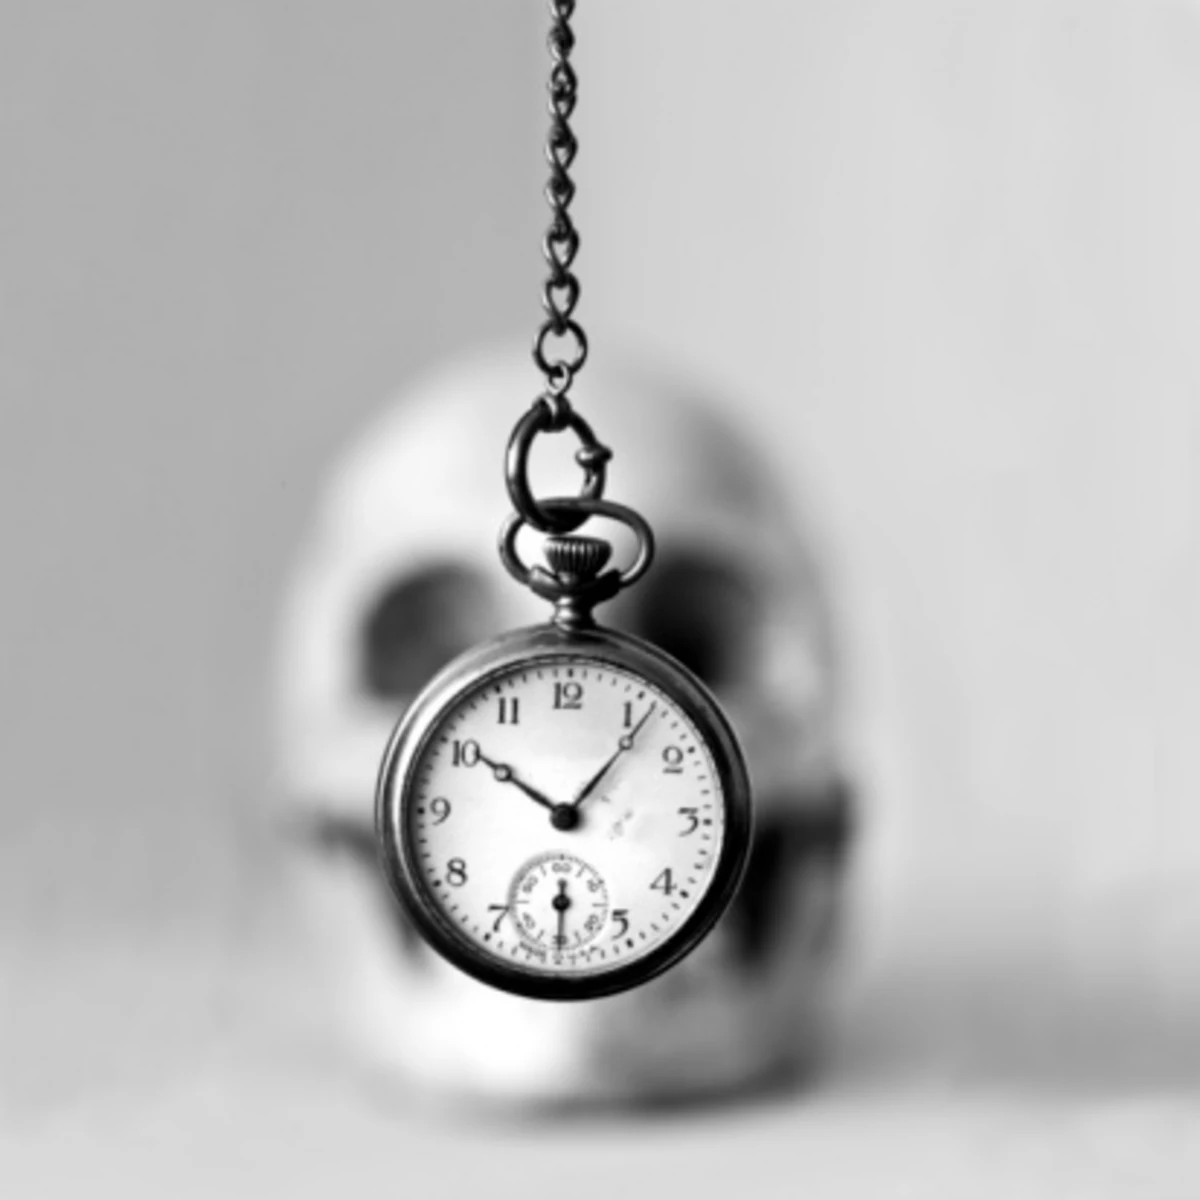 Твое время уходит. Высказывания про часы. Цитаты про часы. Афоризмы про время. Афоризмы про часы.